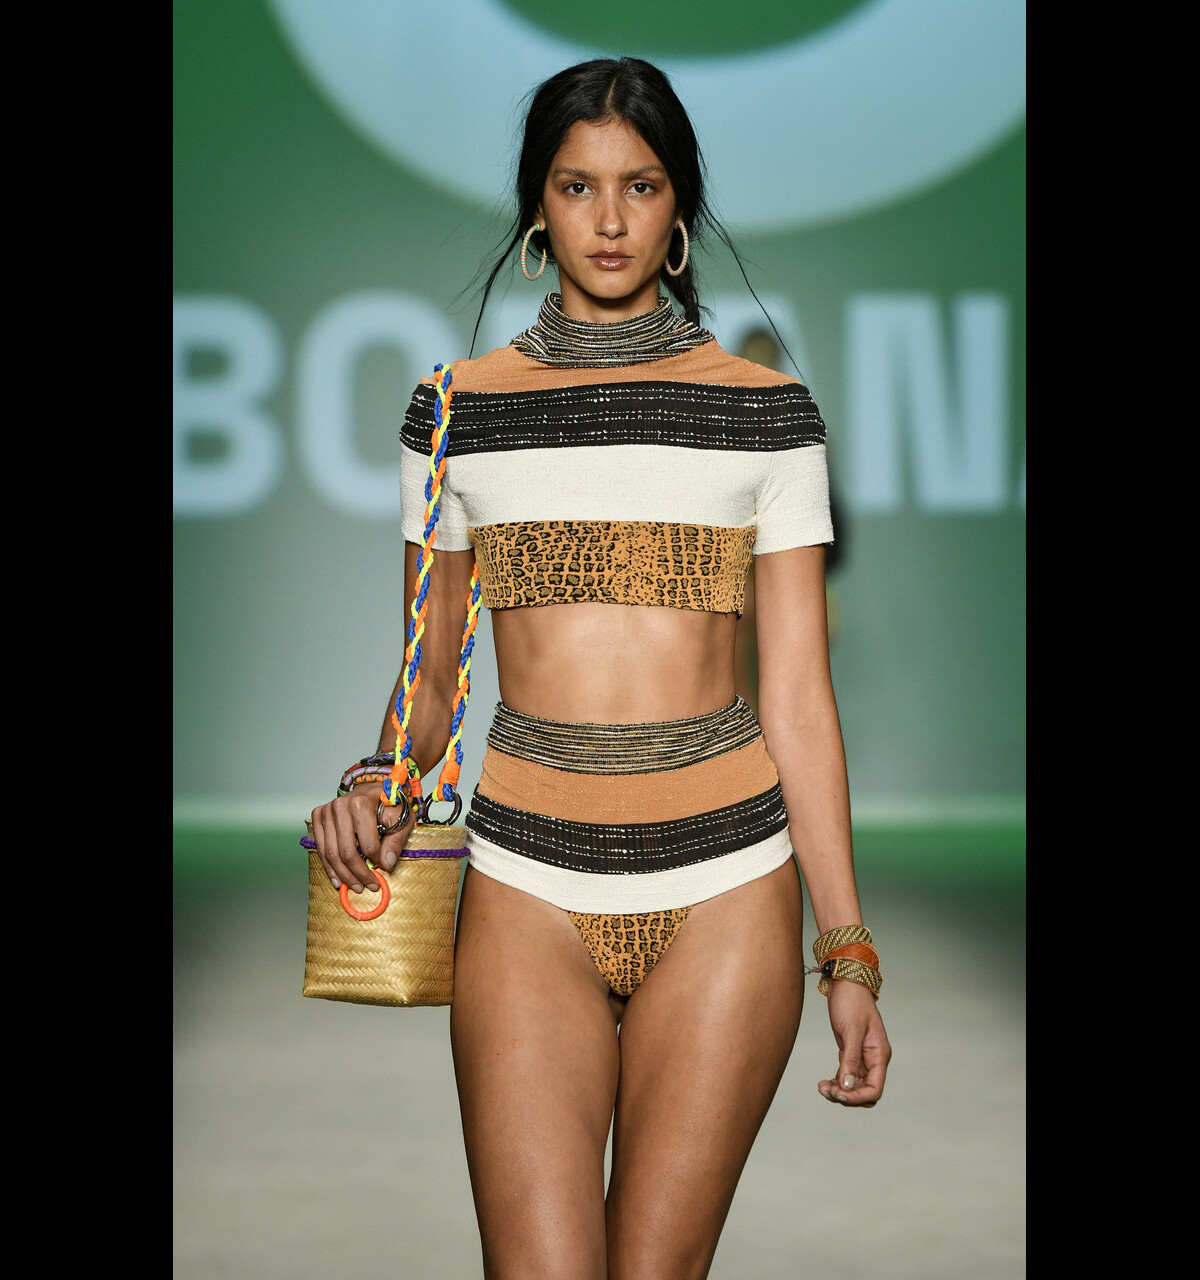 BECCA SWIM 4K / 2020 Bikini Fashion Show / Miami Swim Week 2019 